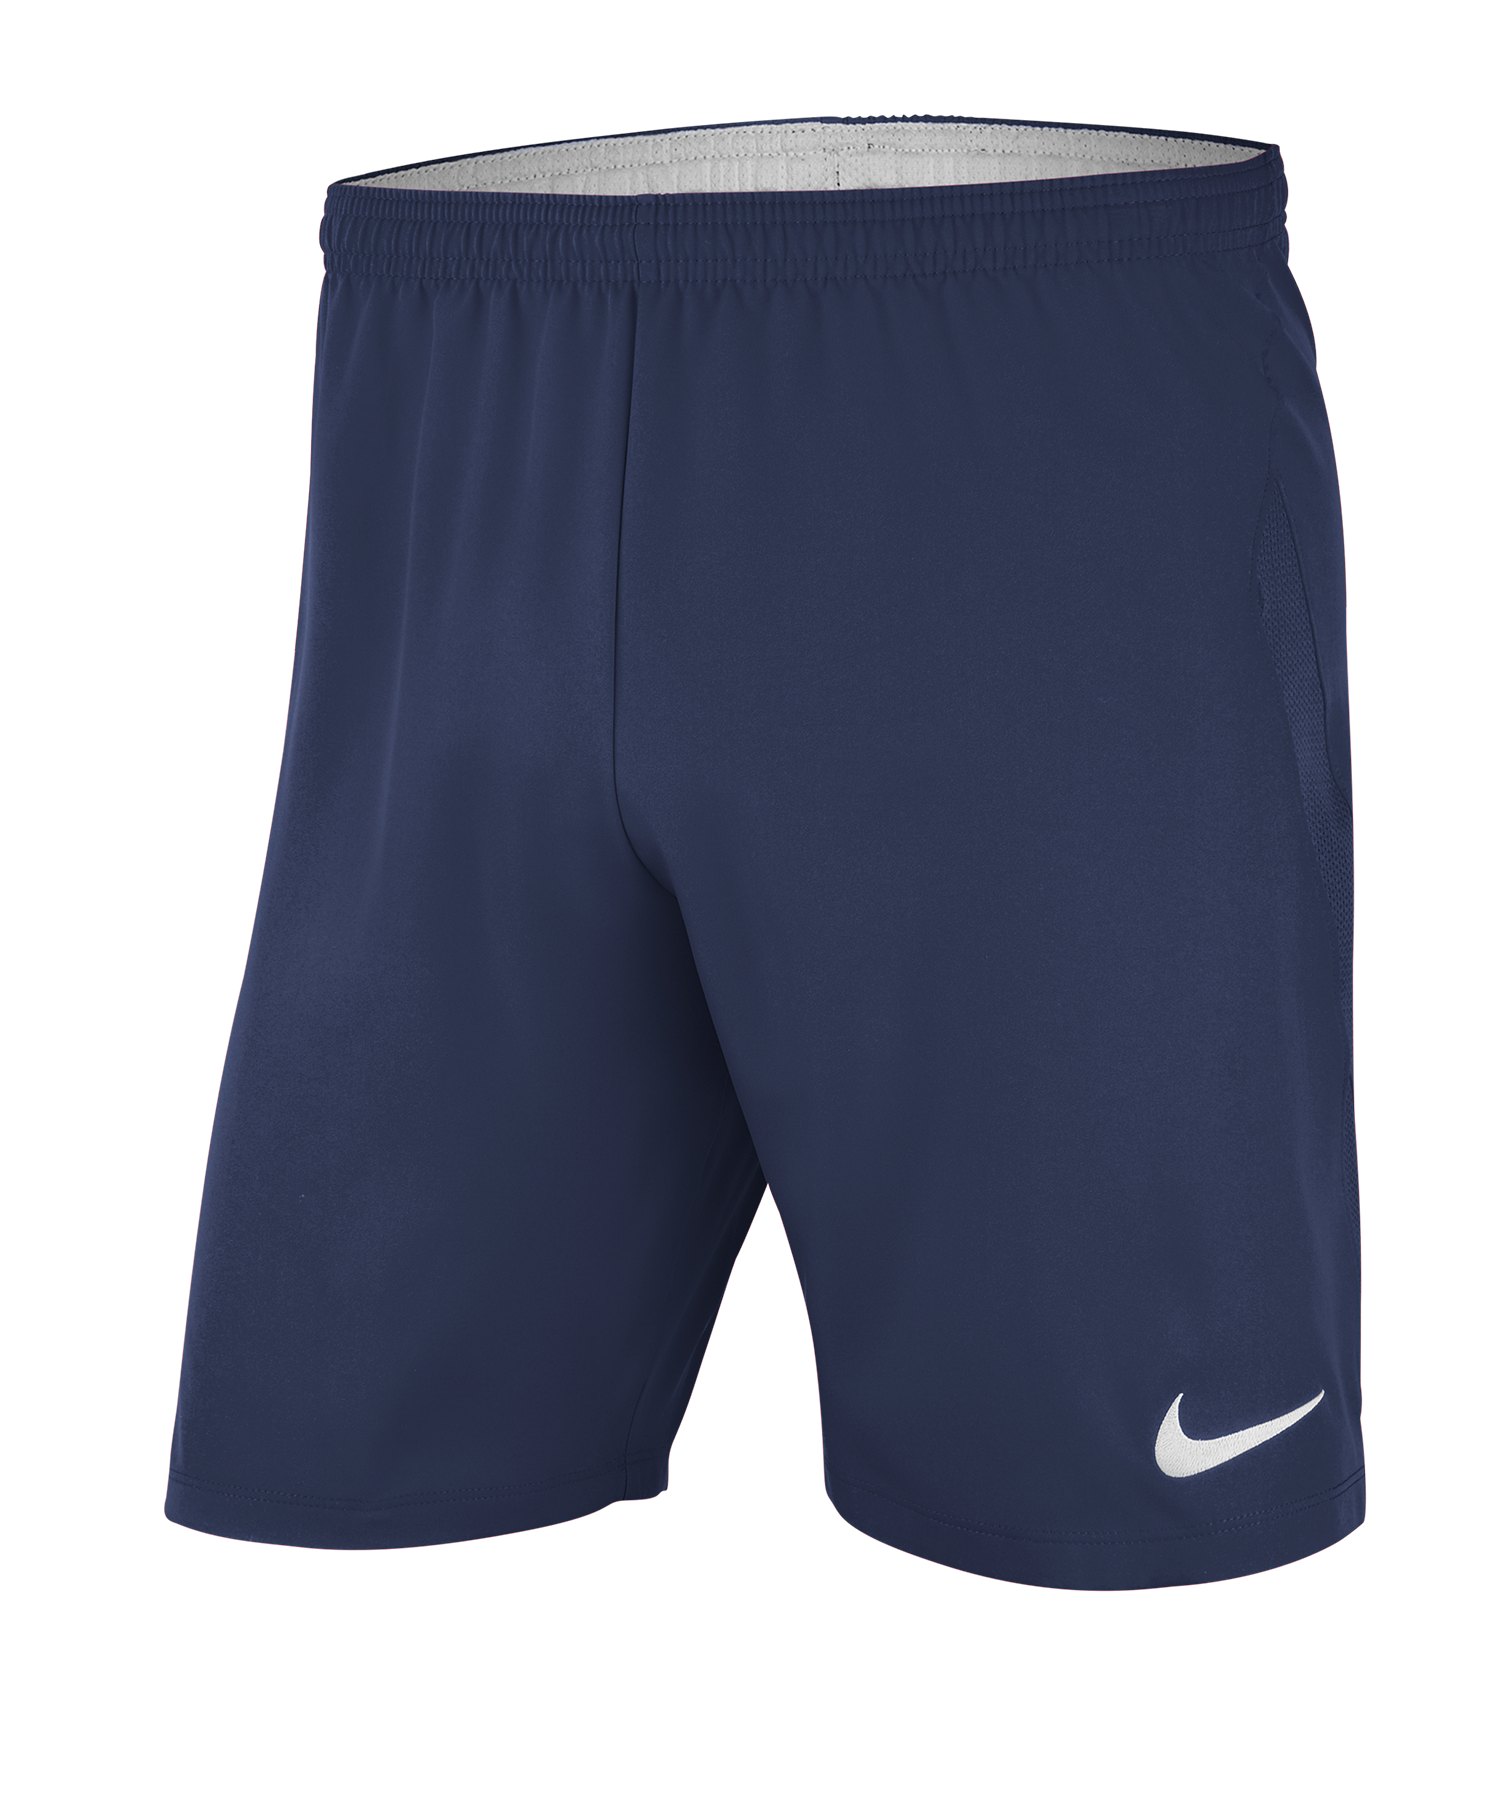 Nike Laser IV Woven Short Blau F410 - blau